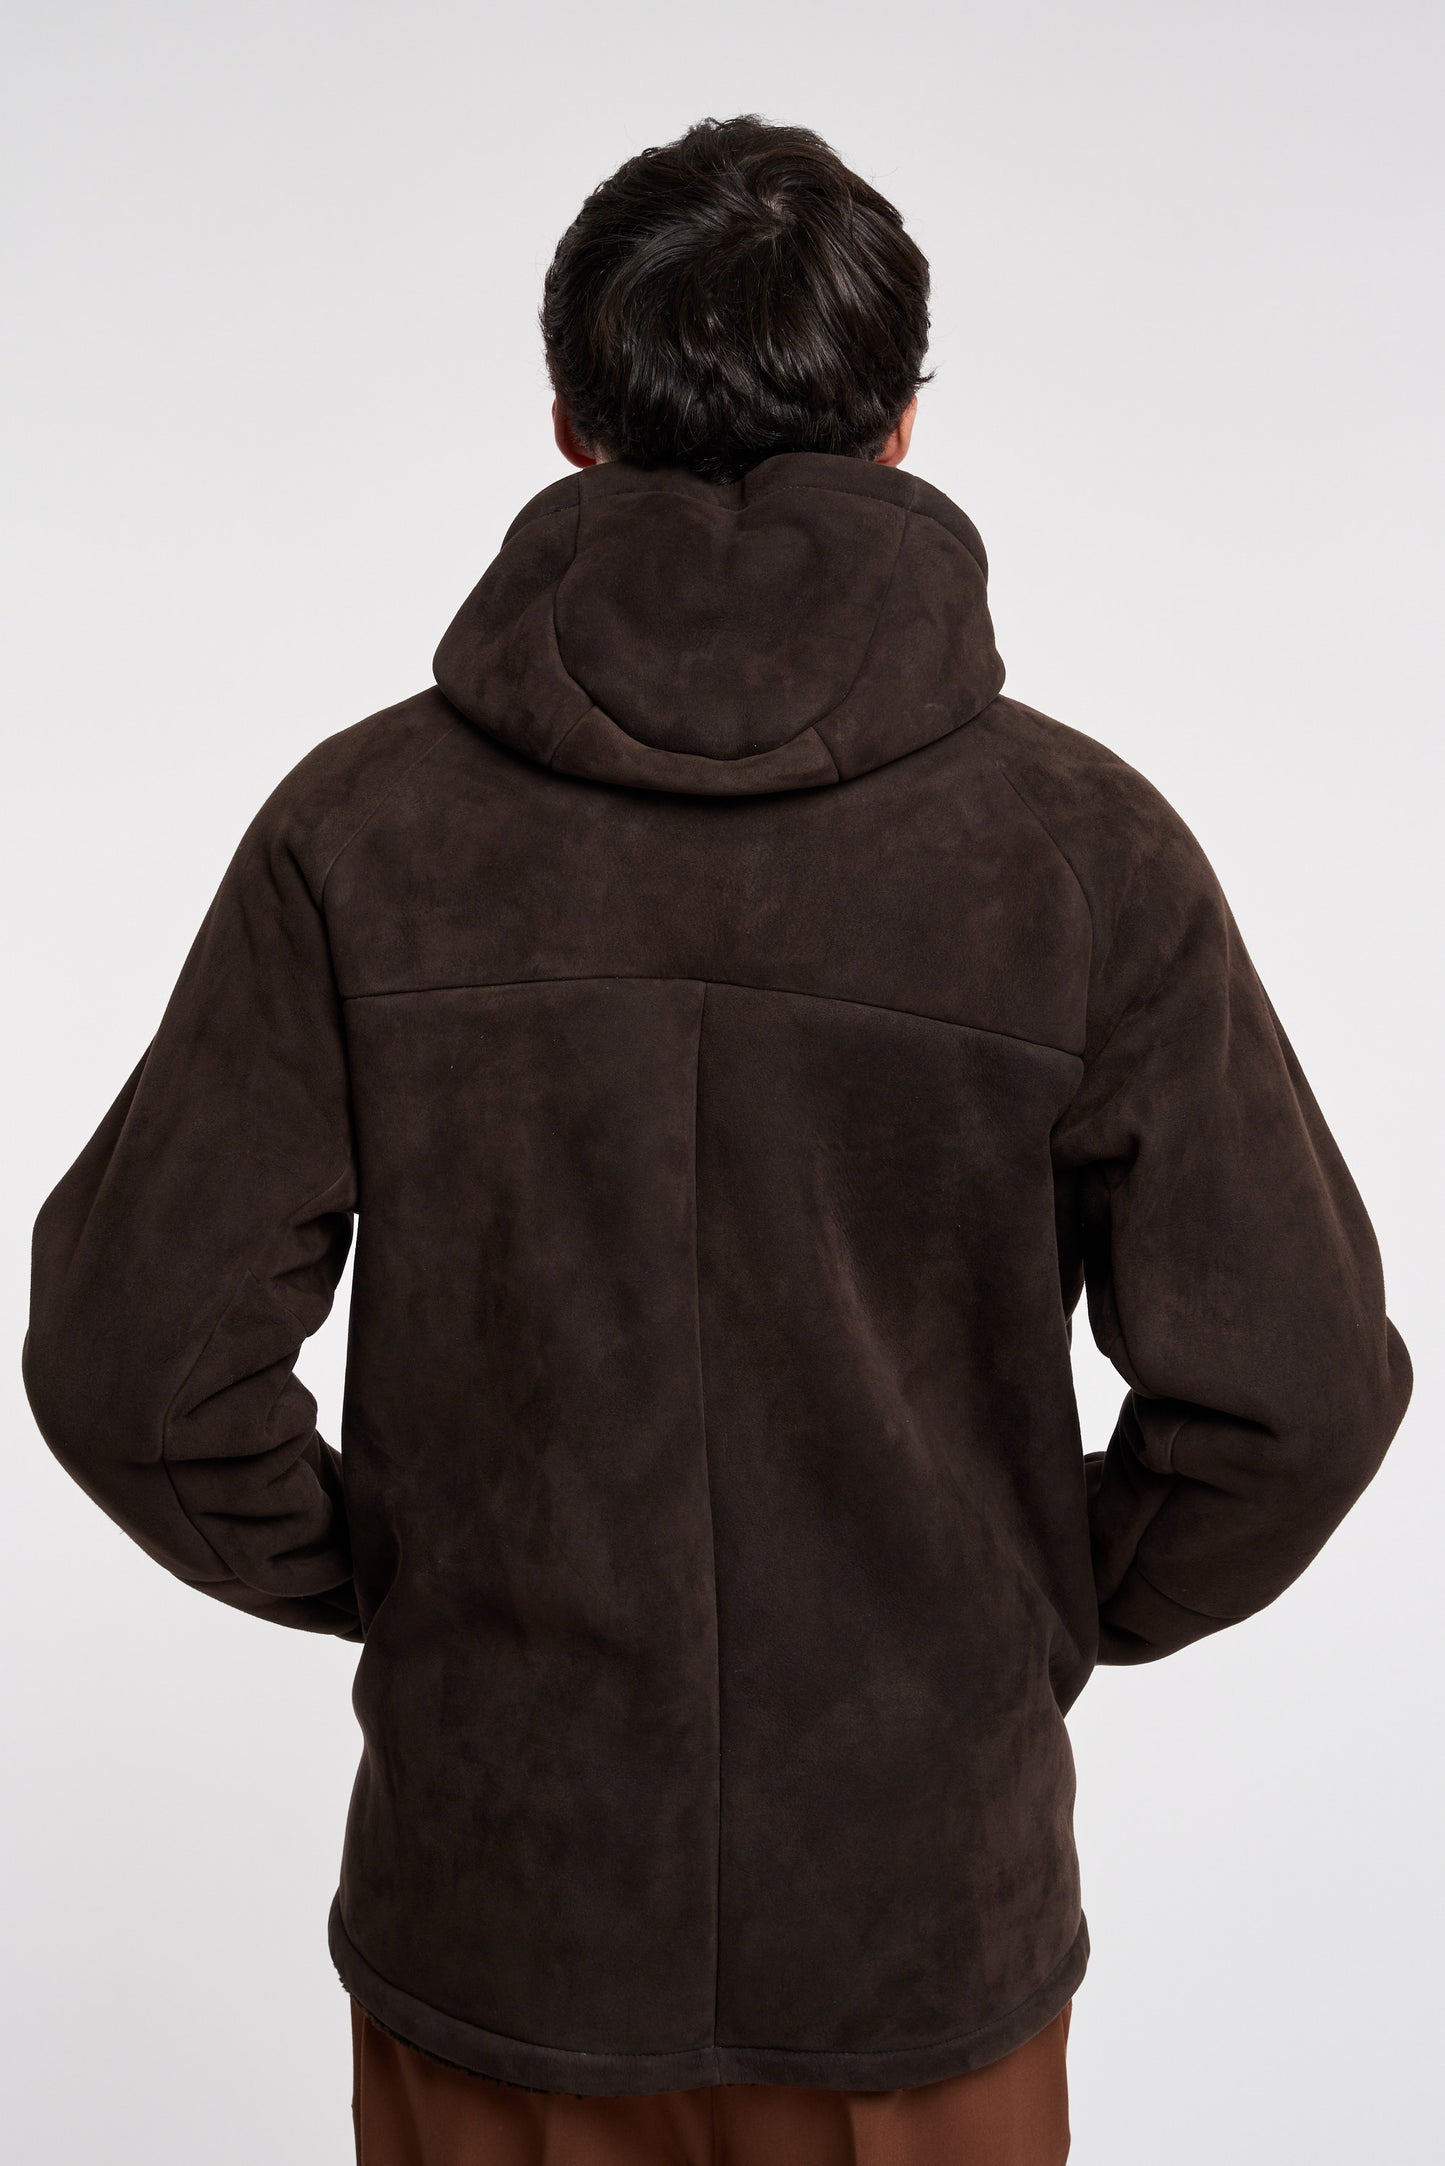  Salvatore Santoro Brown Leather Jacket 100% Lh Marrone Uomo - 5